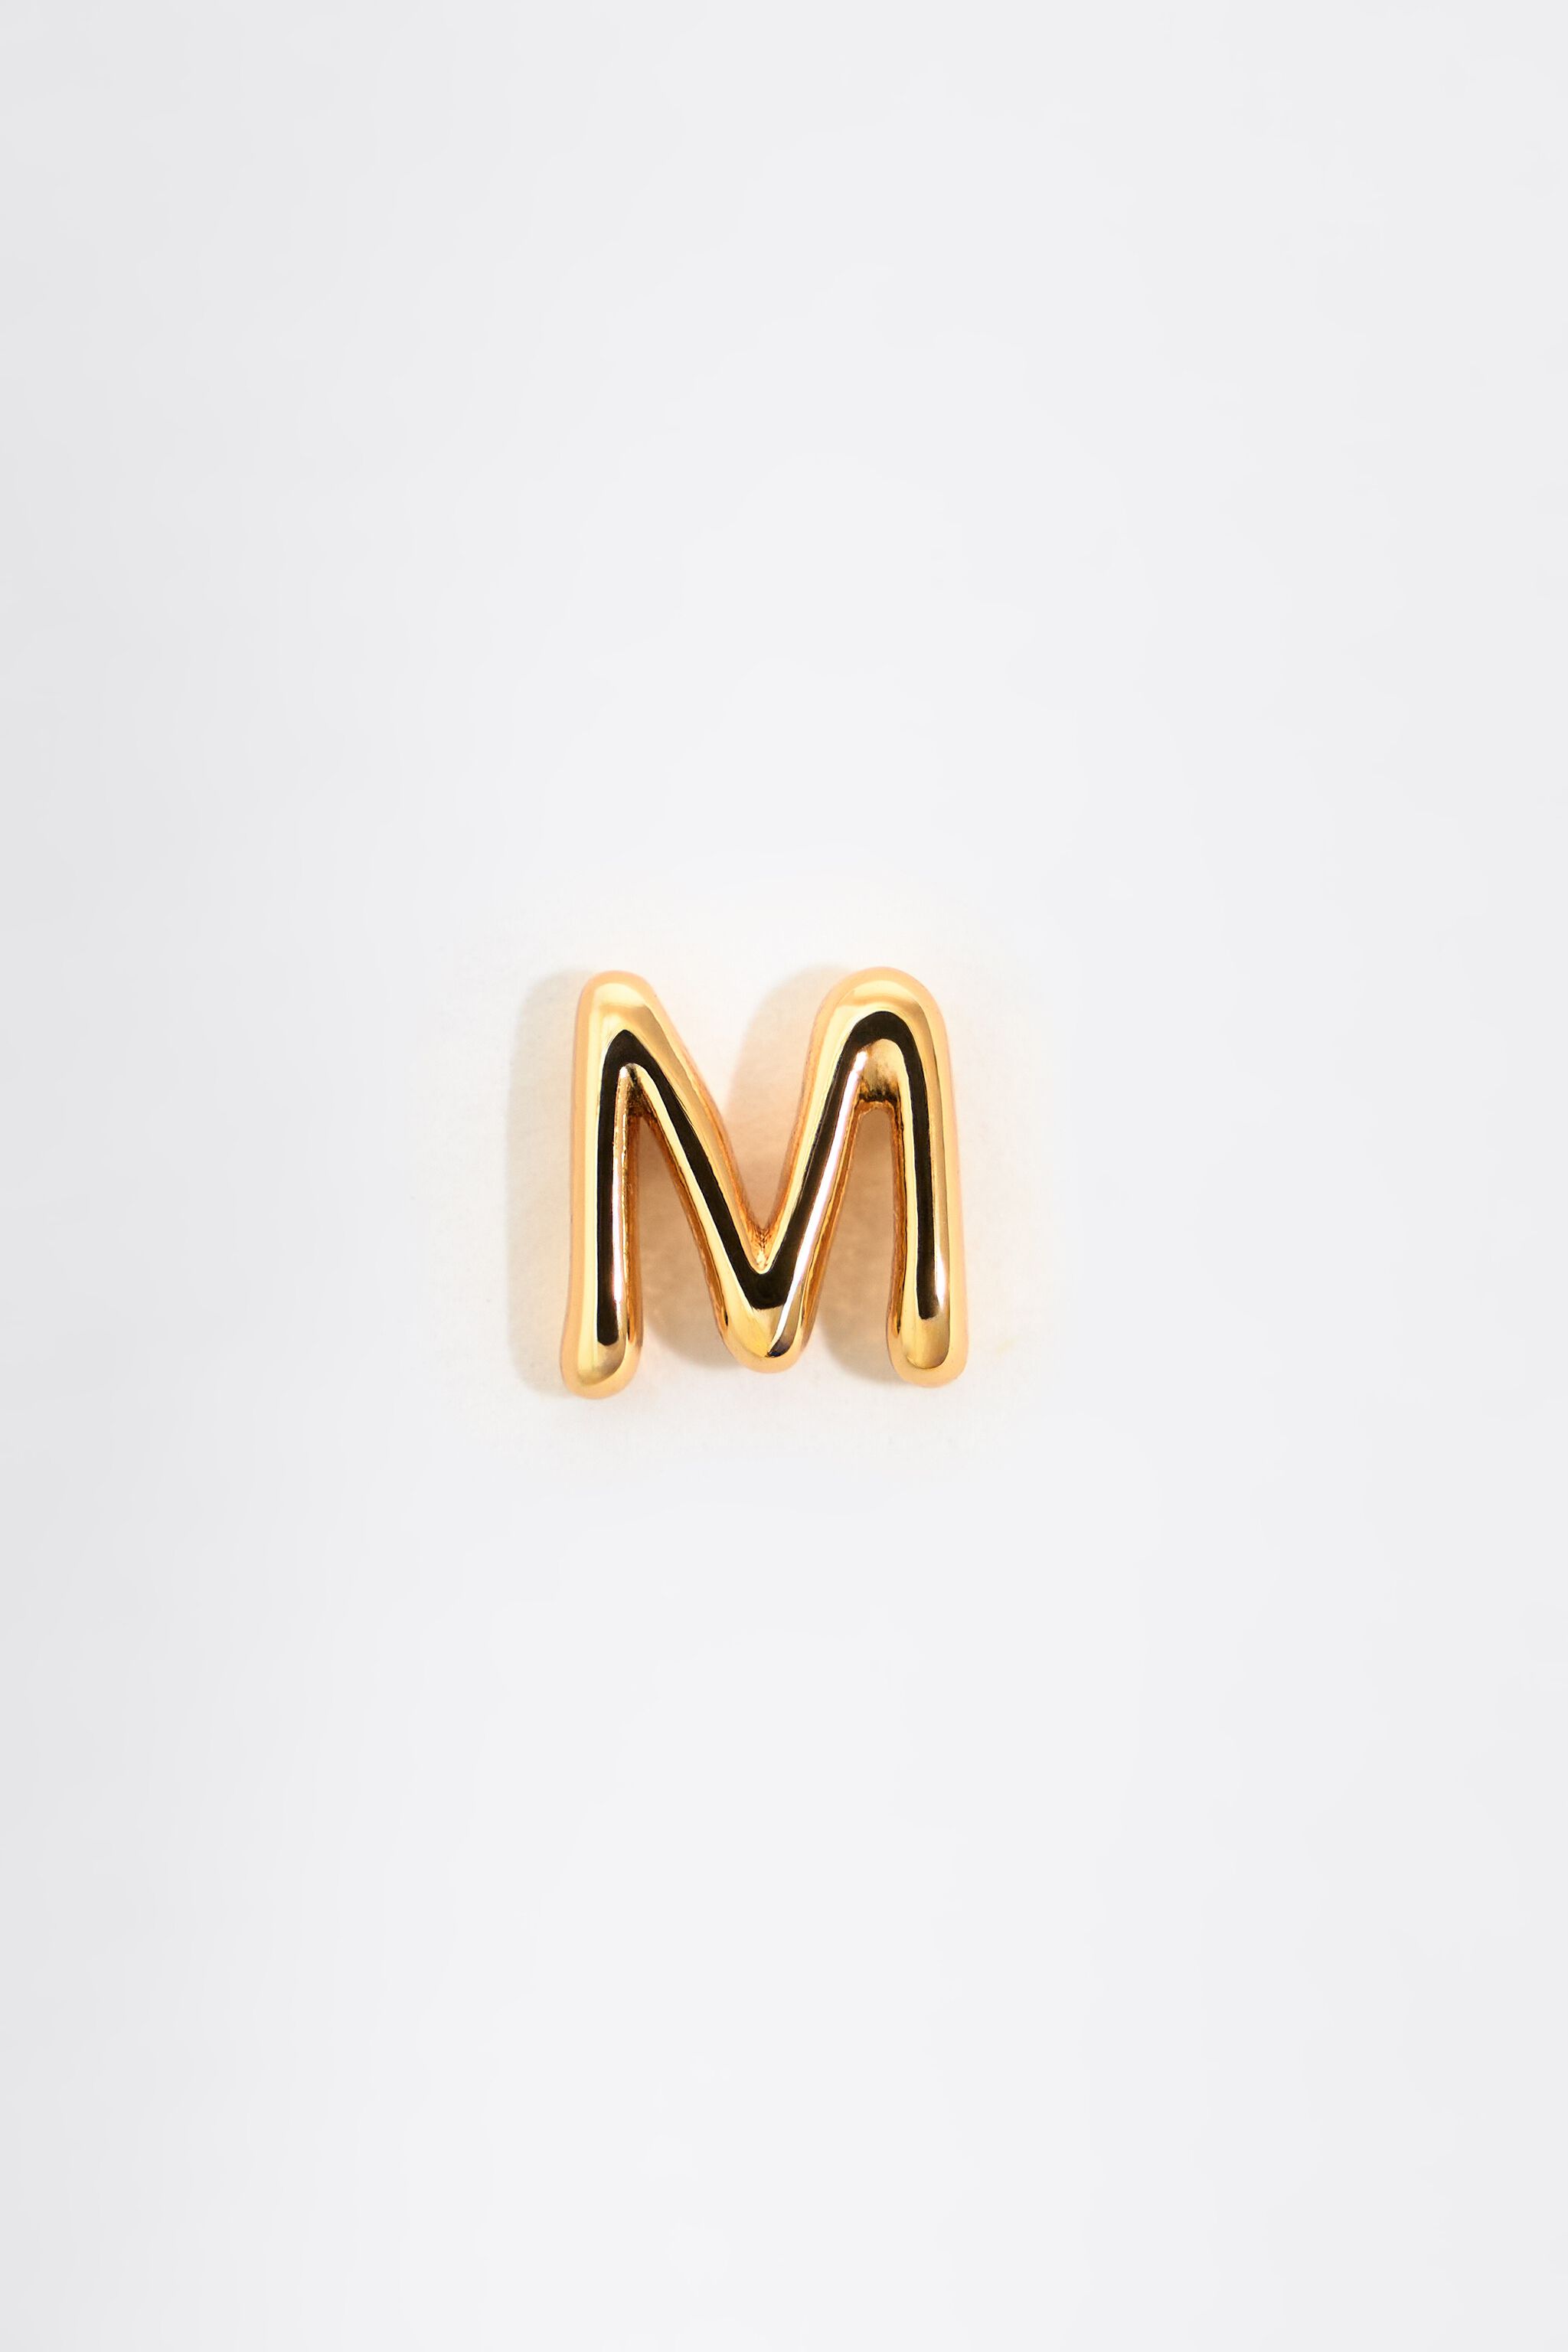 Letter M earrings by SoCharm